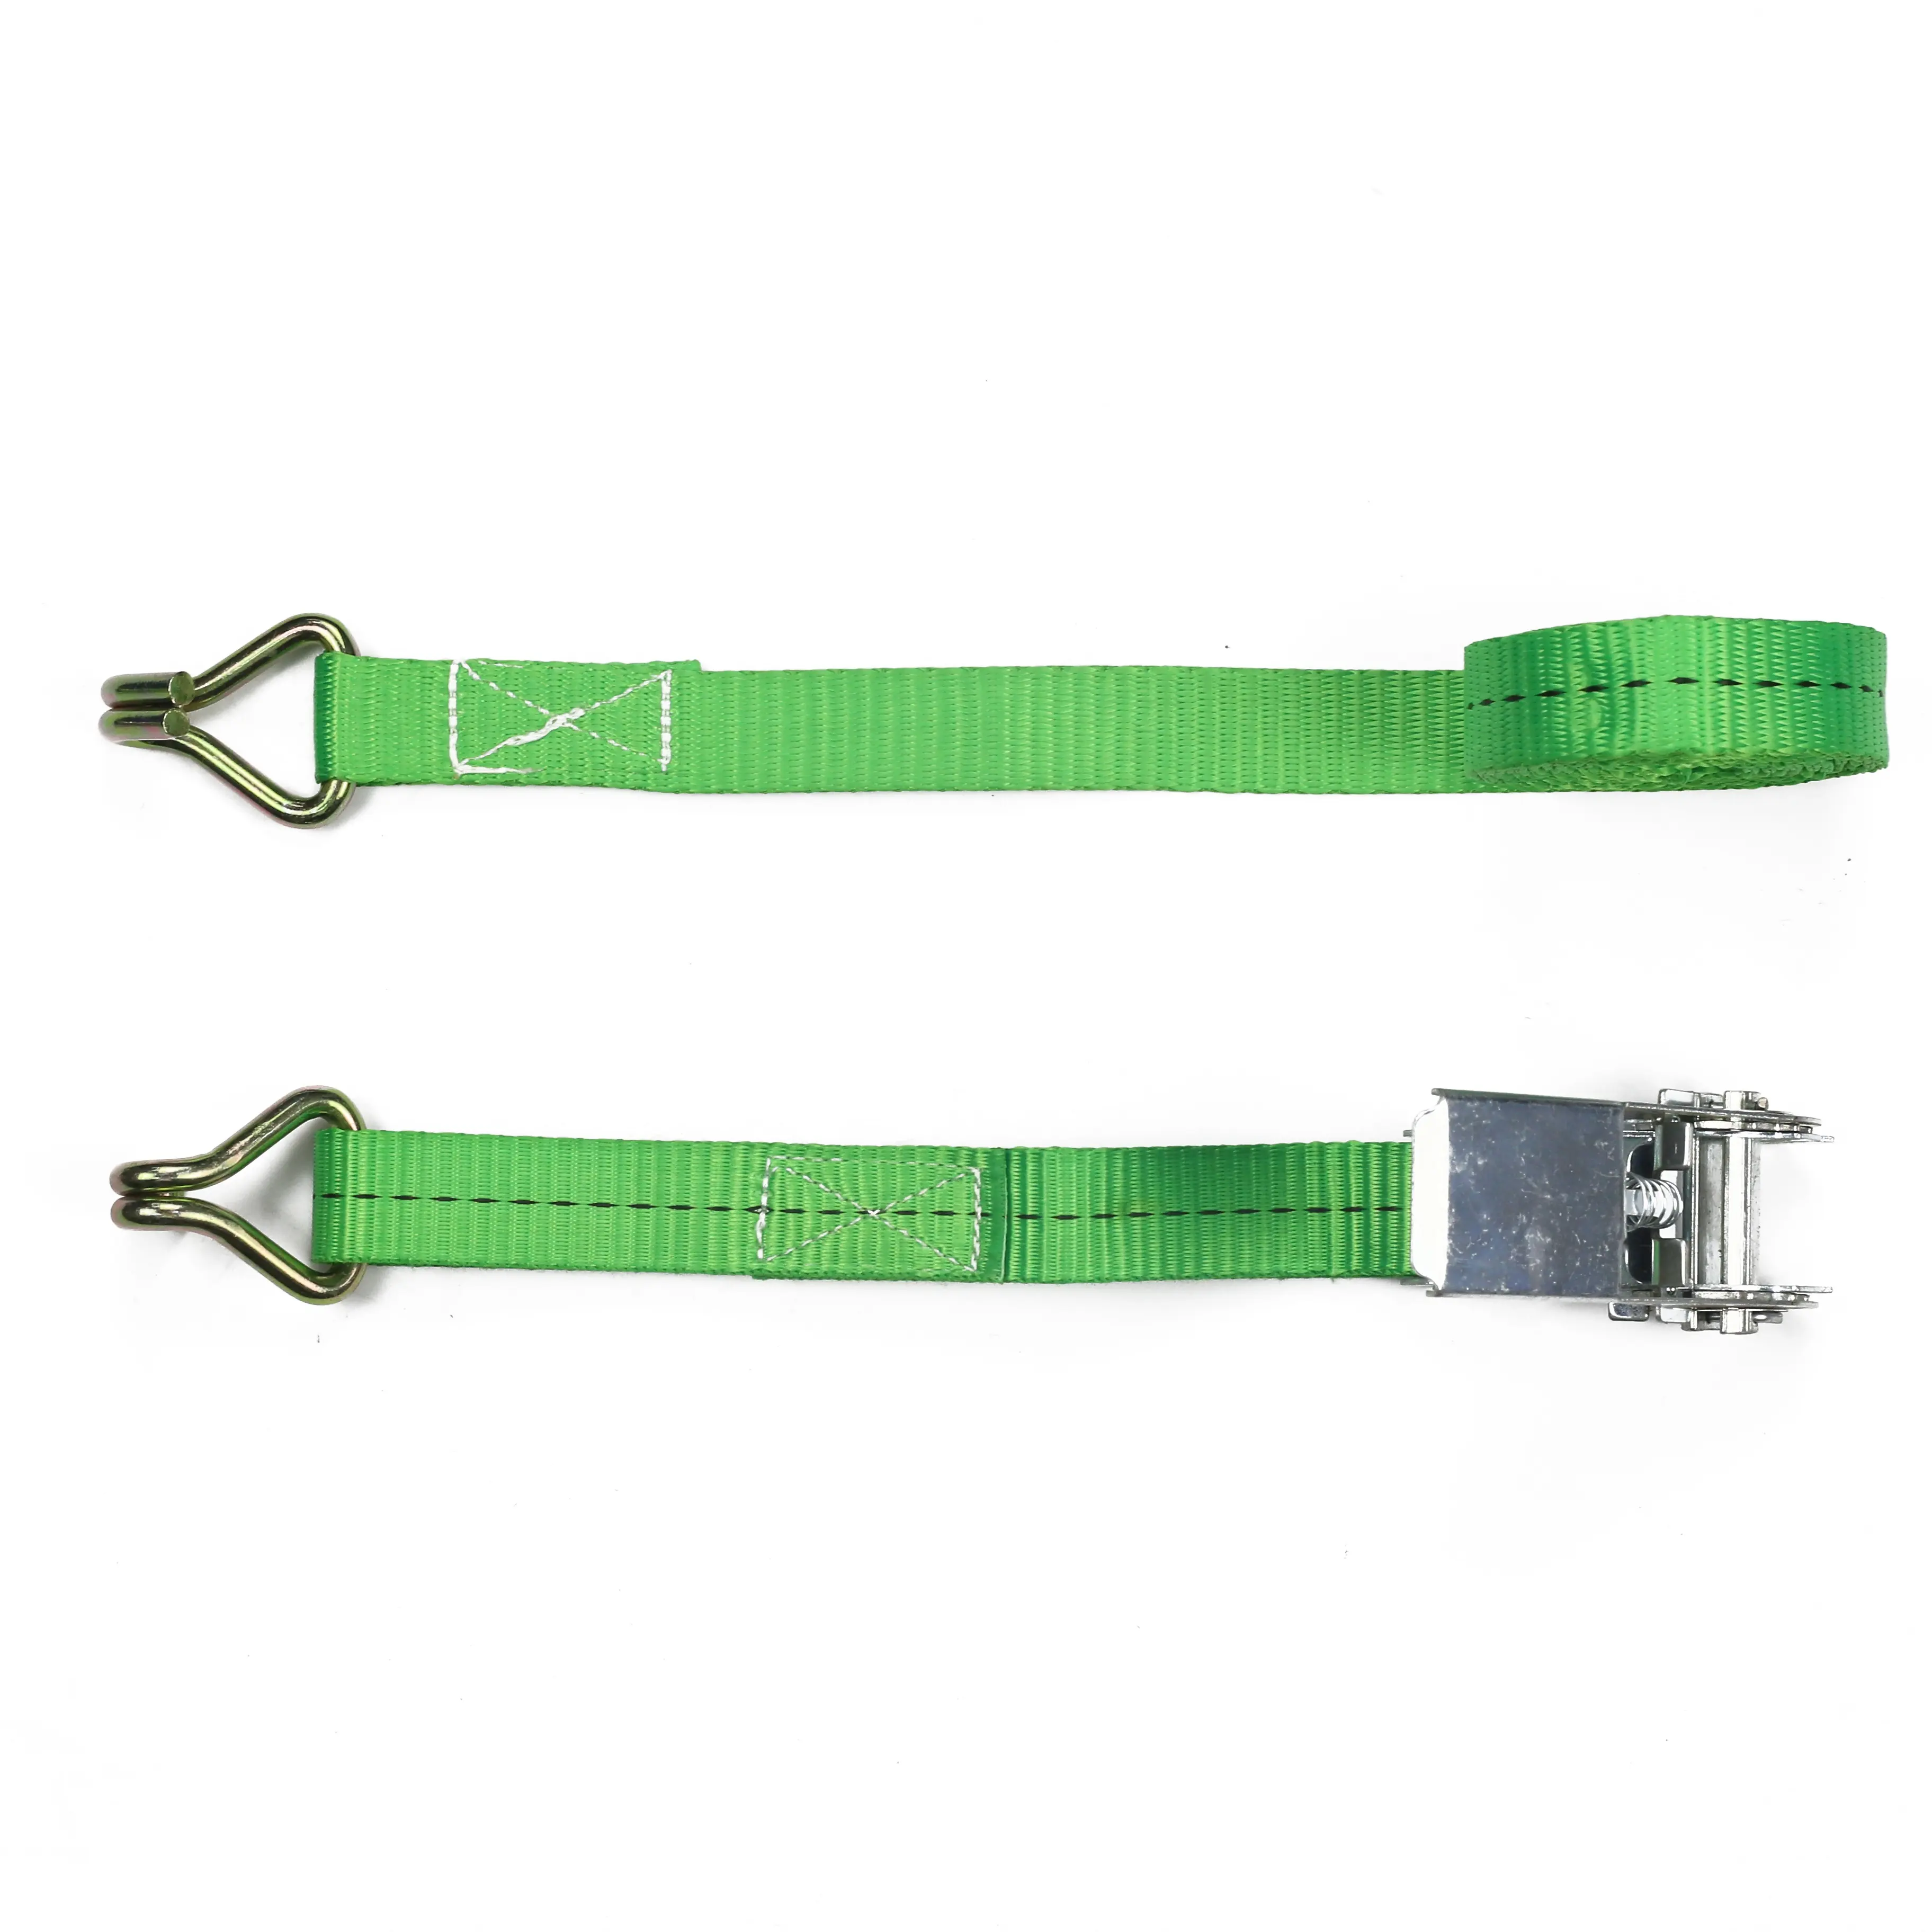 जीएस प्रमाणित हरा रंग स्वचालित वापस लेने योग्य शाफ़्ट टाई डाउन स्ट्रैप